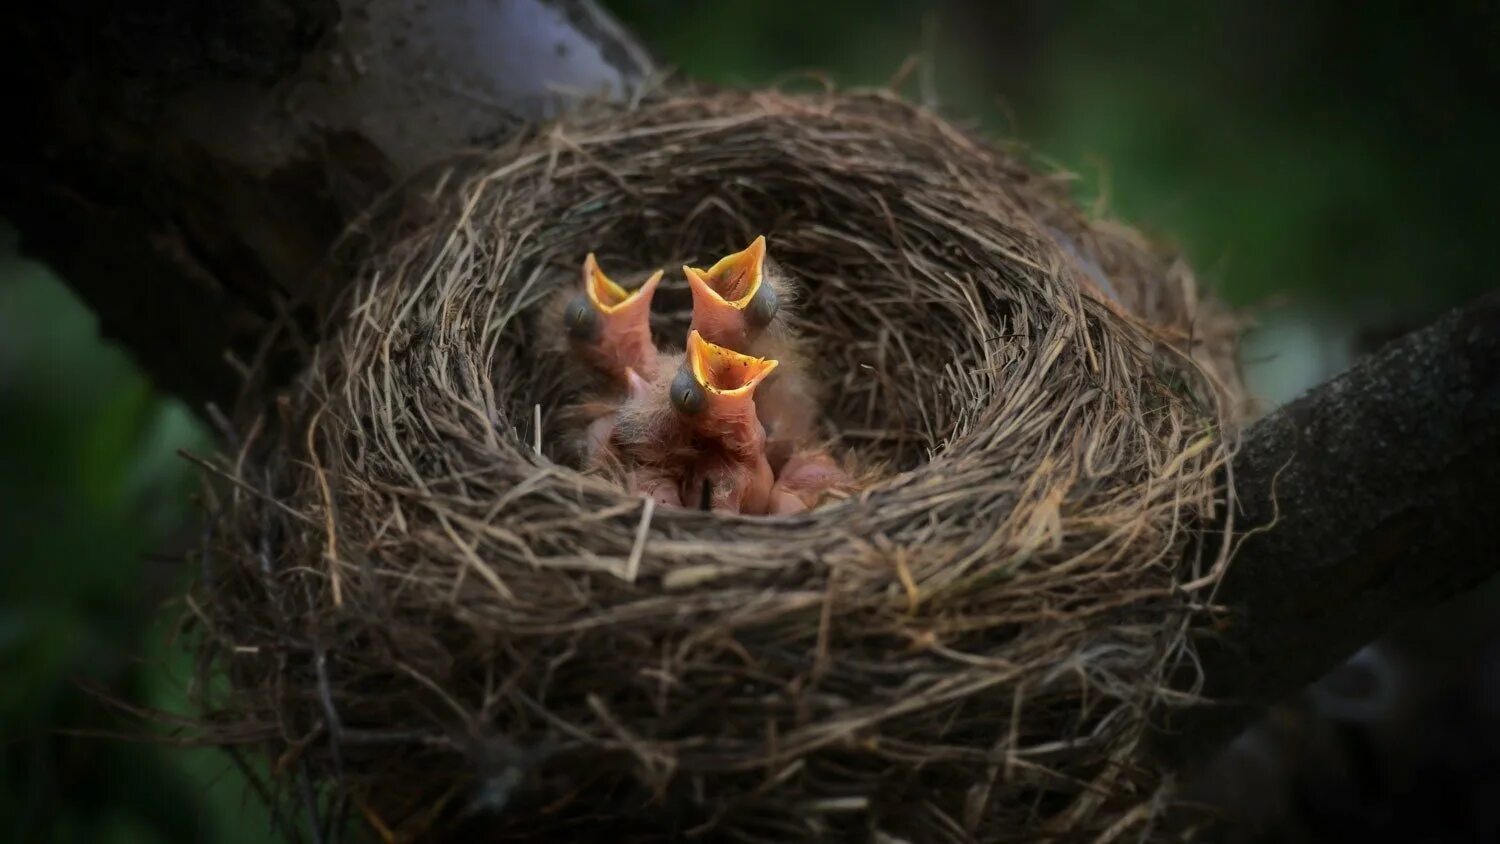 Гнезда птиц видео для детей. Гнездо горихвостки. Гнездо вьюрка. Птенцы в гнезде. Птица с птенцами в гнезде.